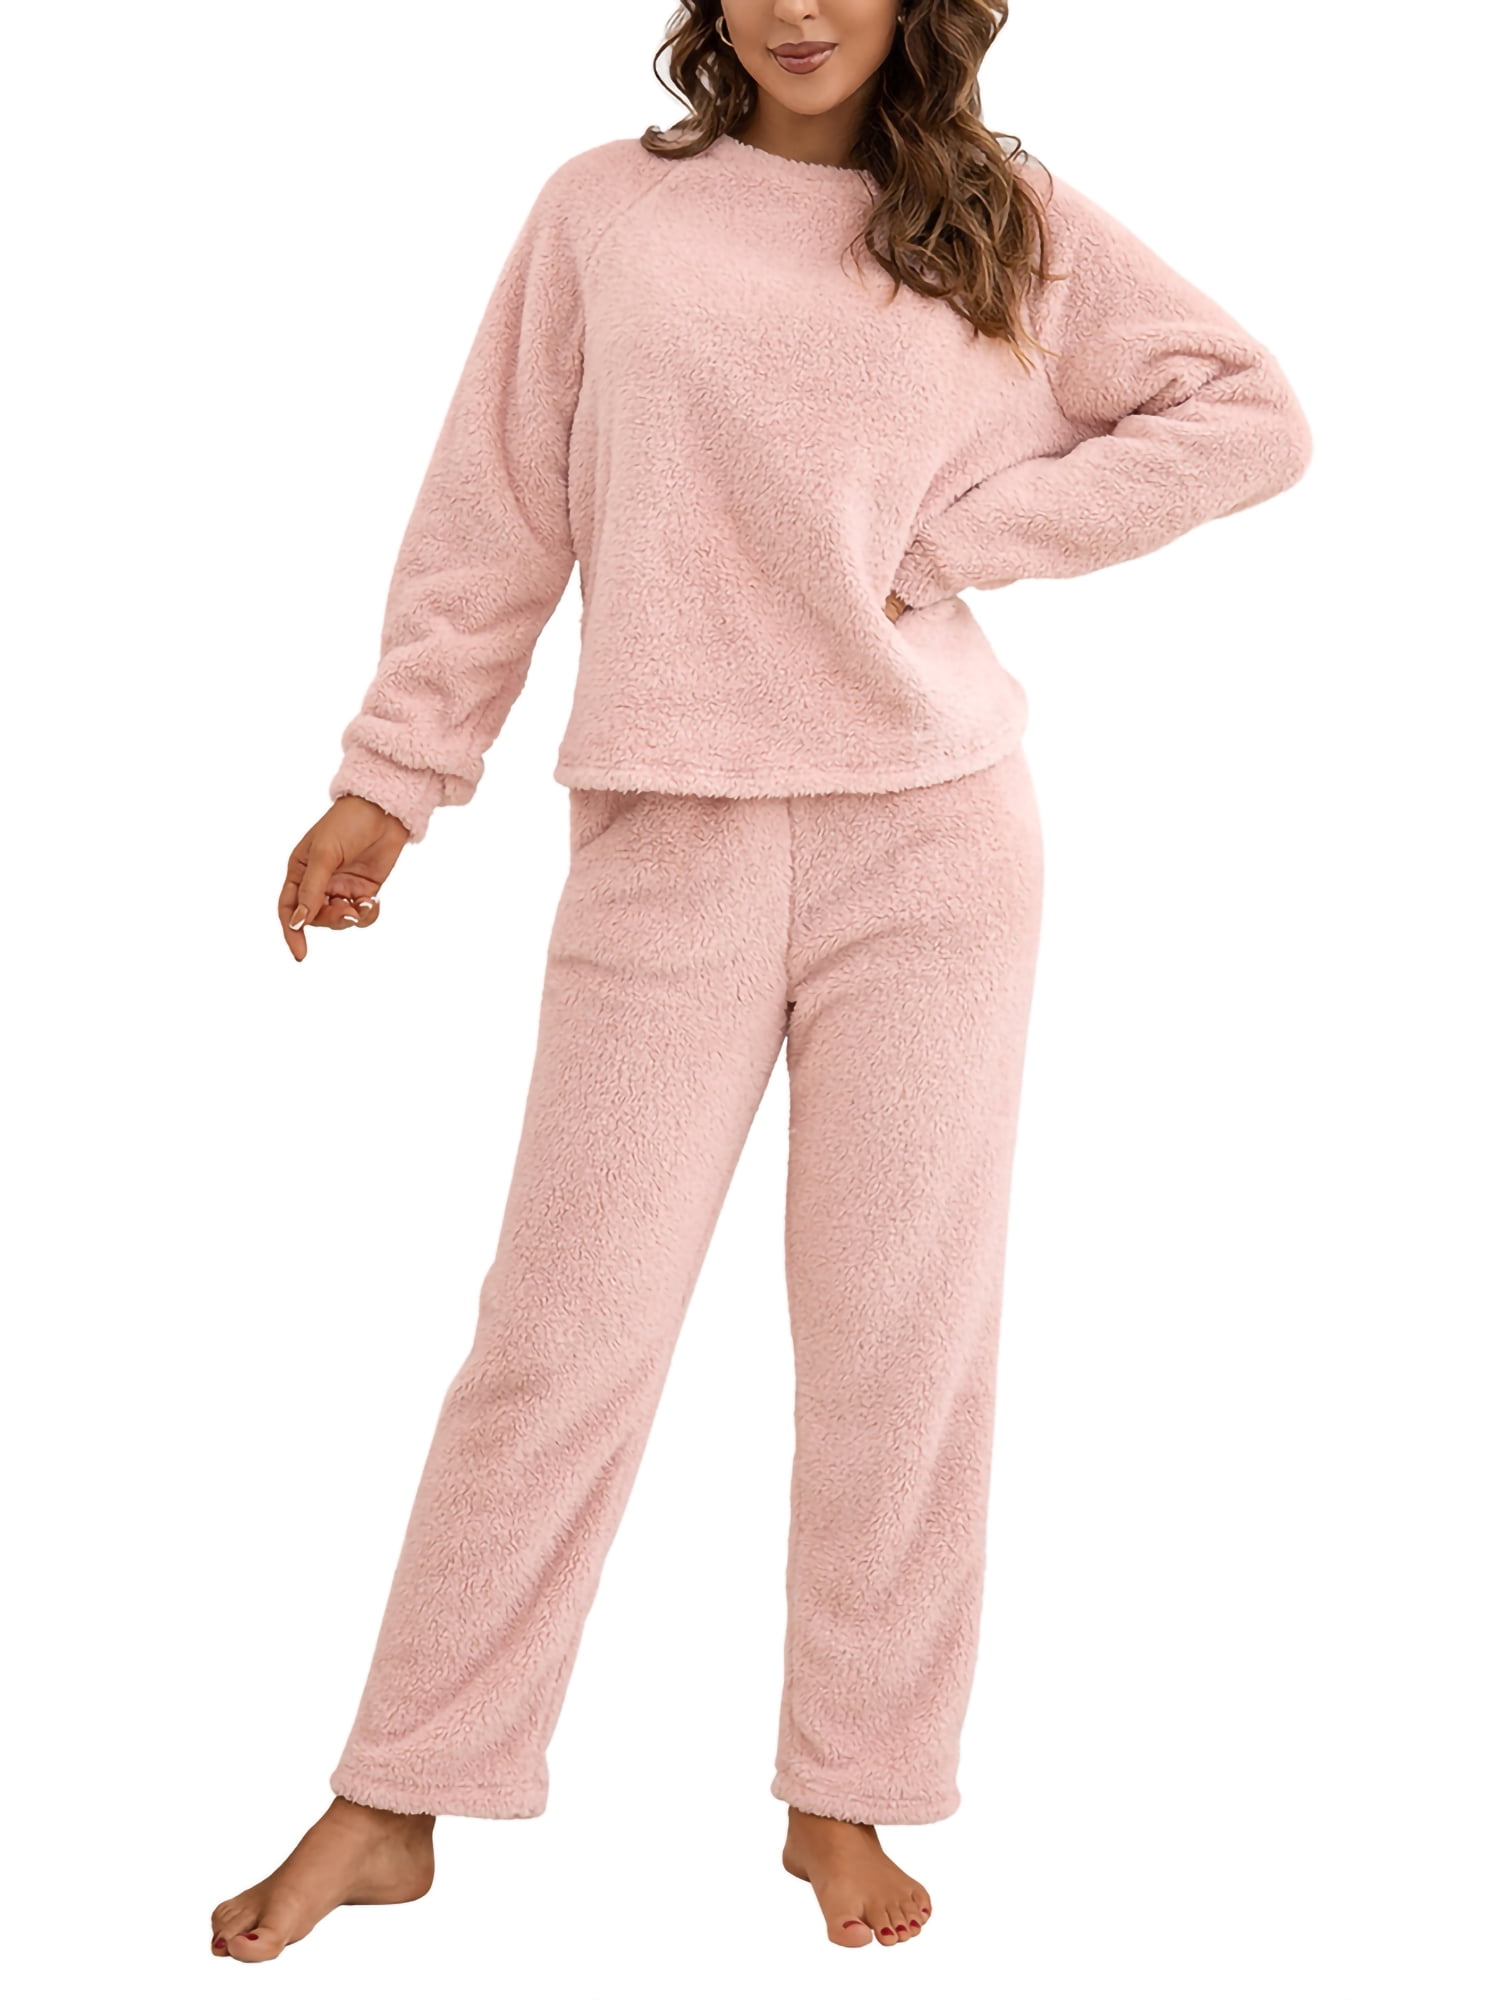  Fuzzy Sweatsuit for Women Fuzzy 2 Piece Solid